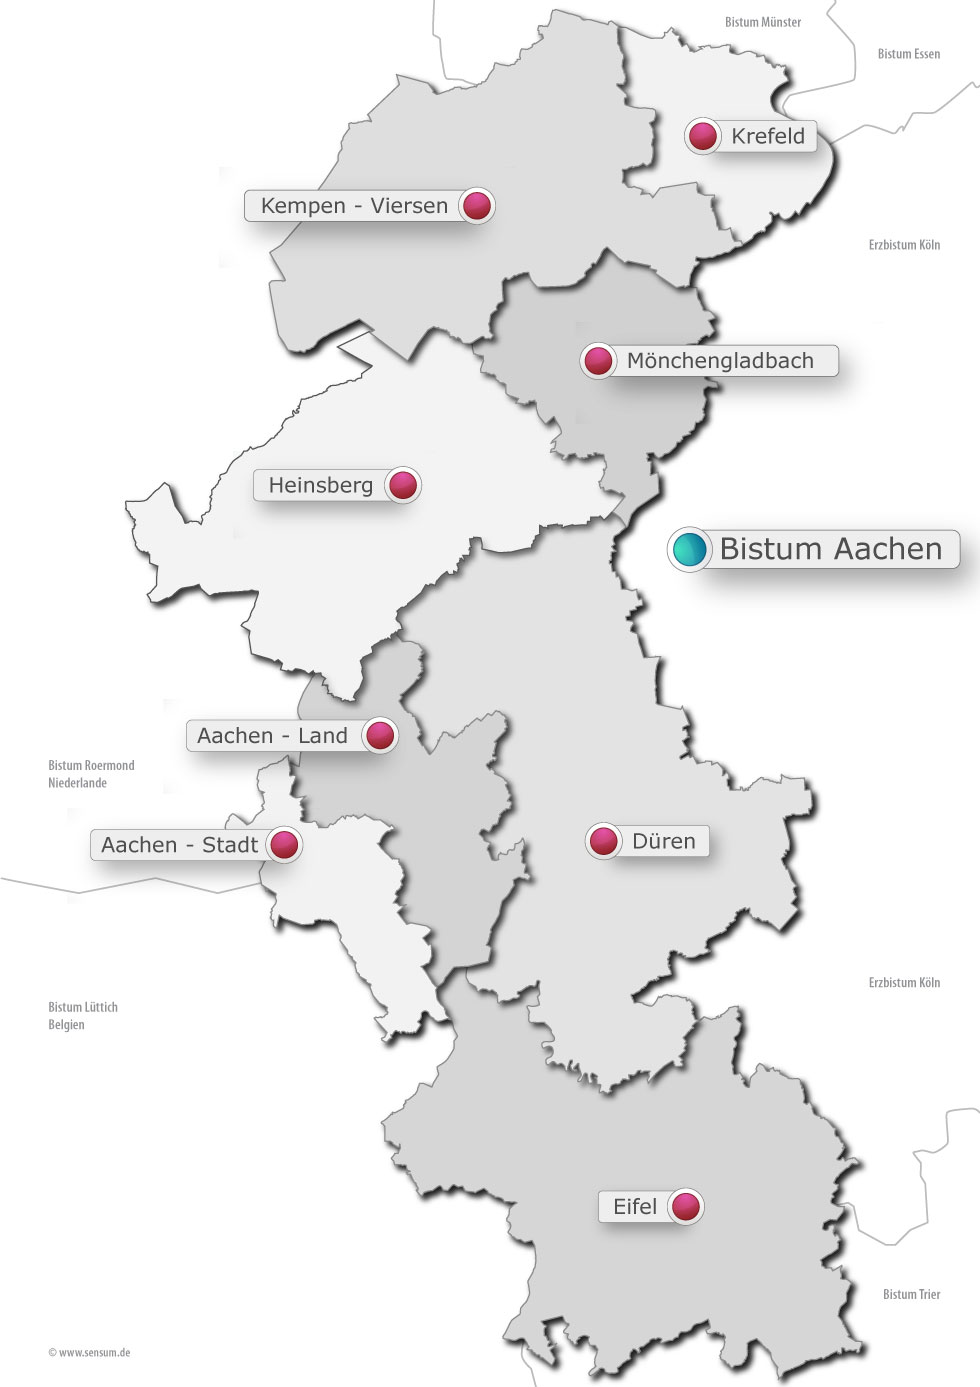 Bistumskarte - Regionen (c) sensum